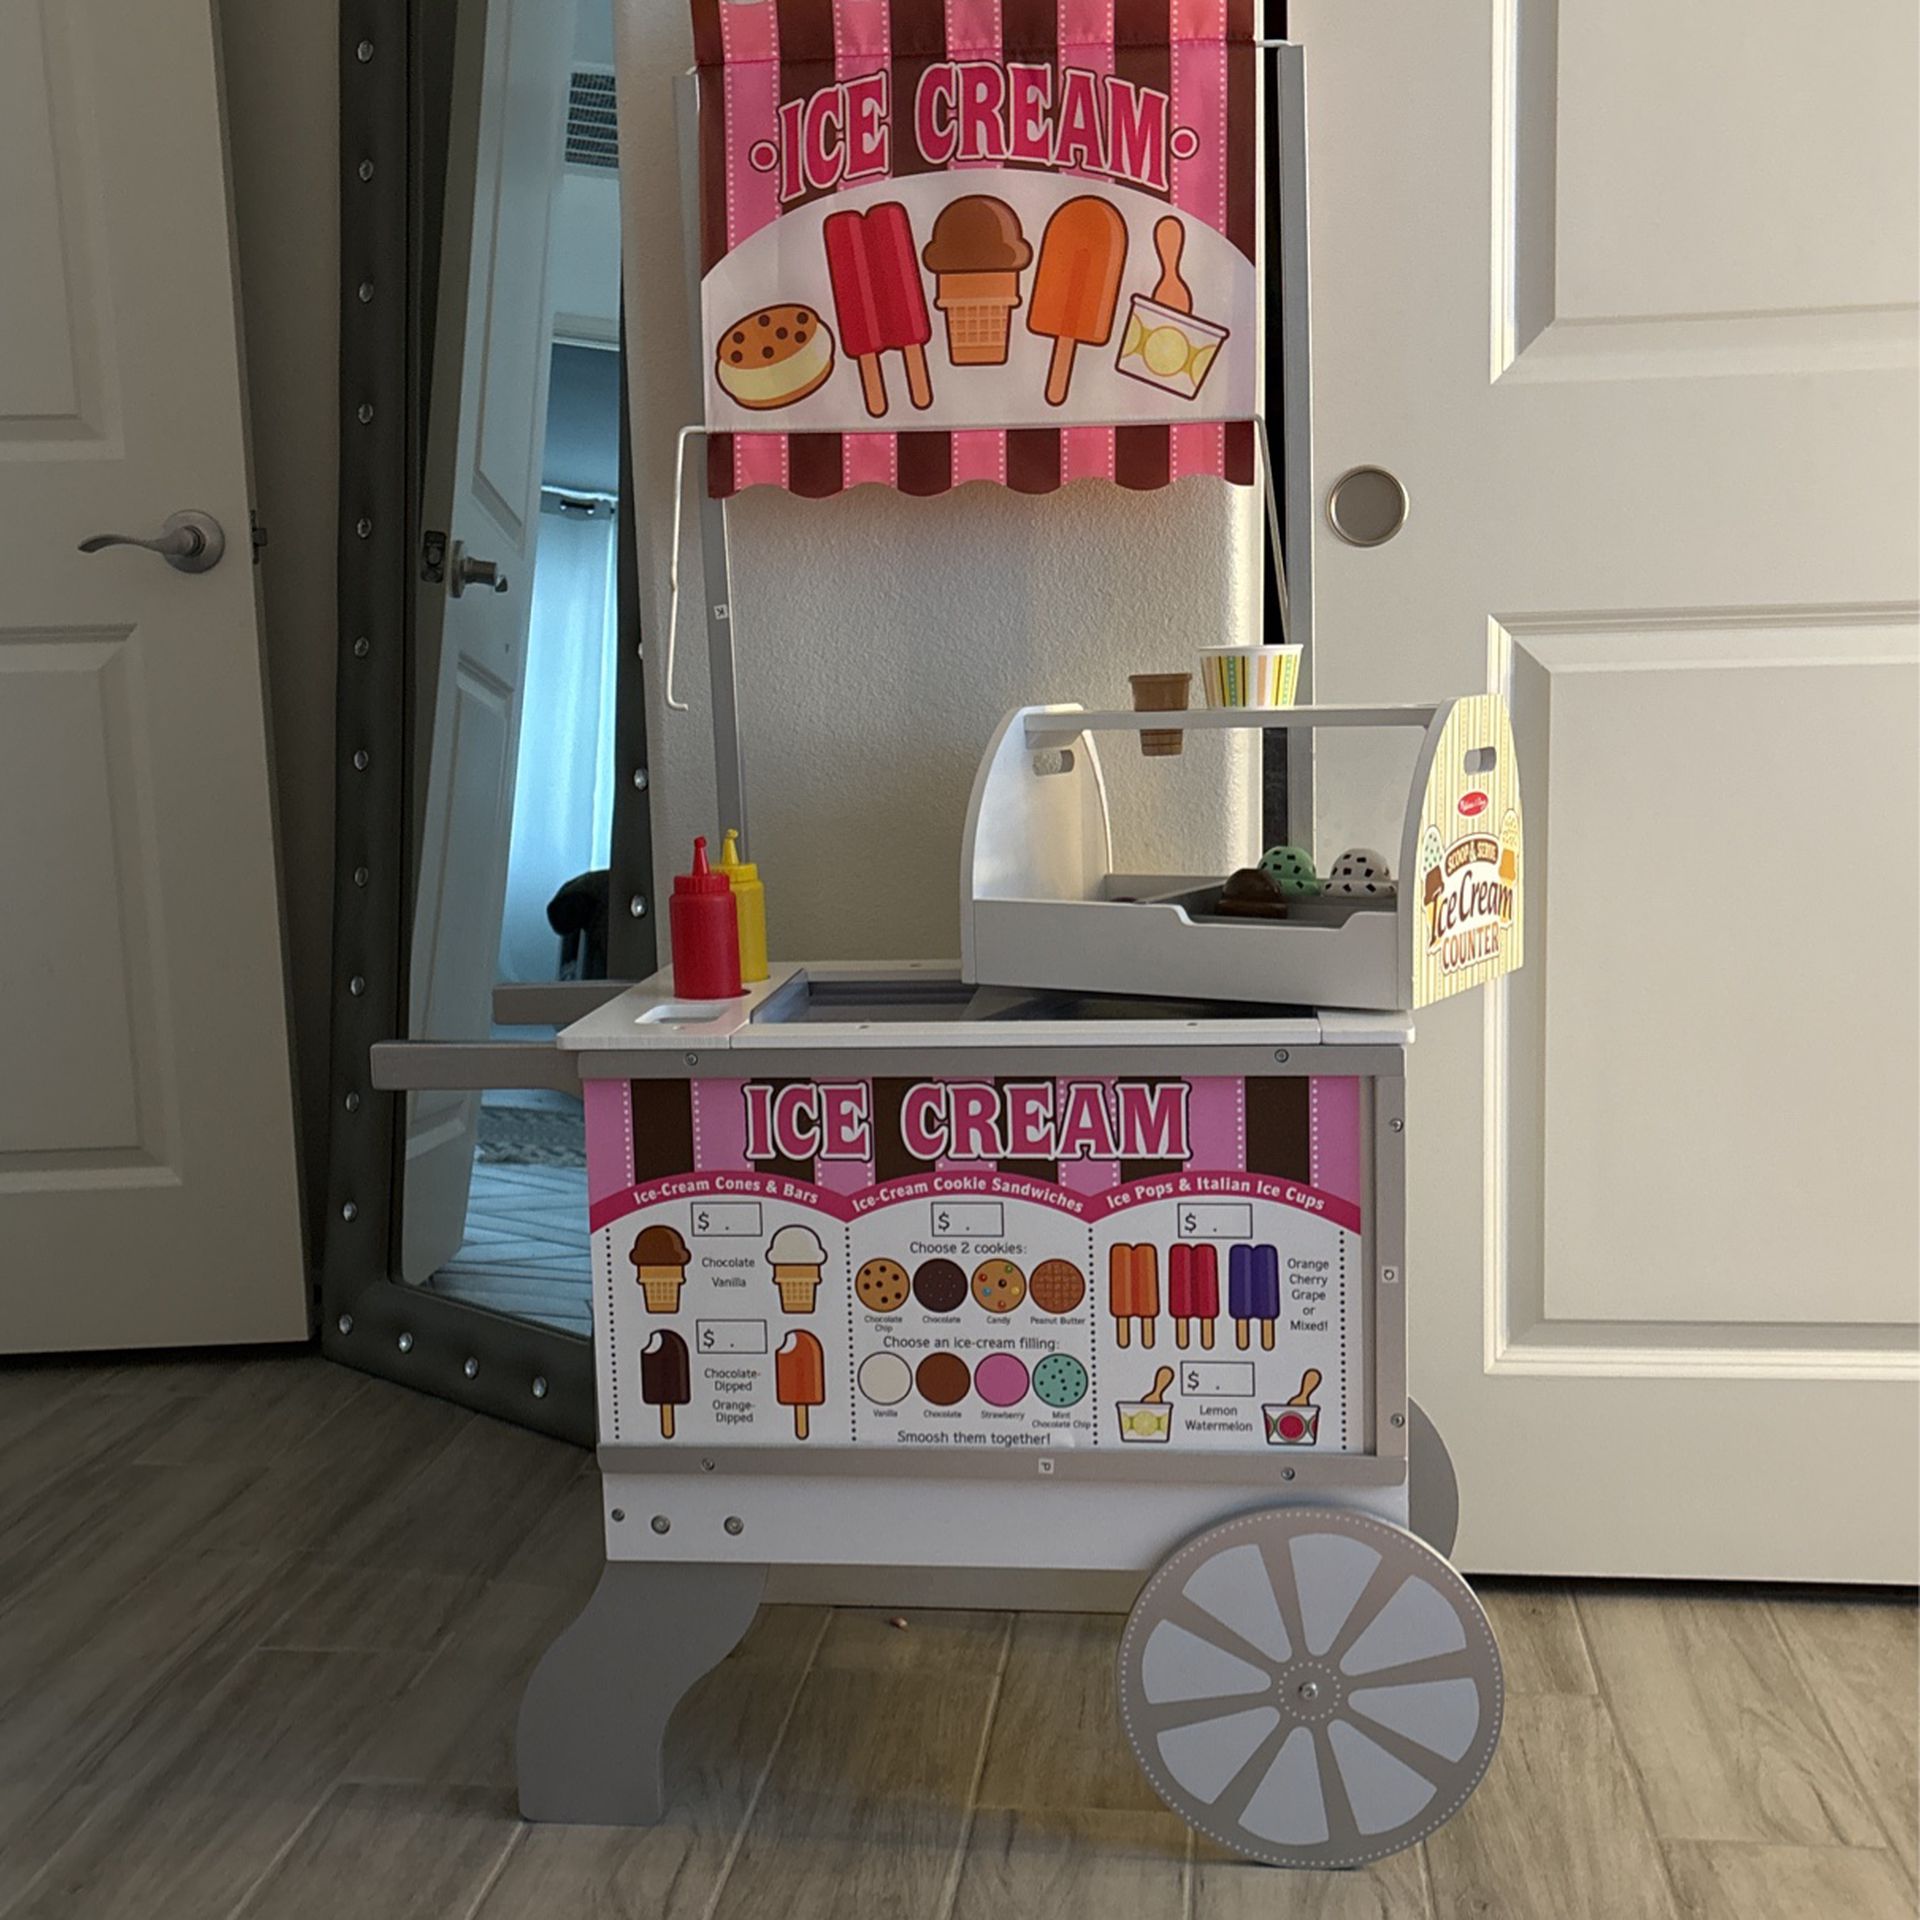 Kids Ice Cream Cart